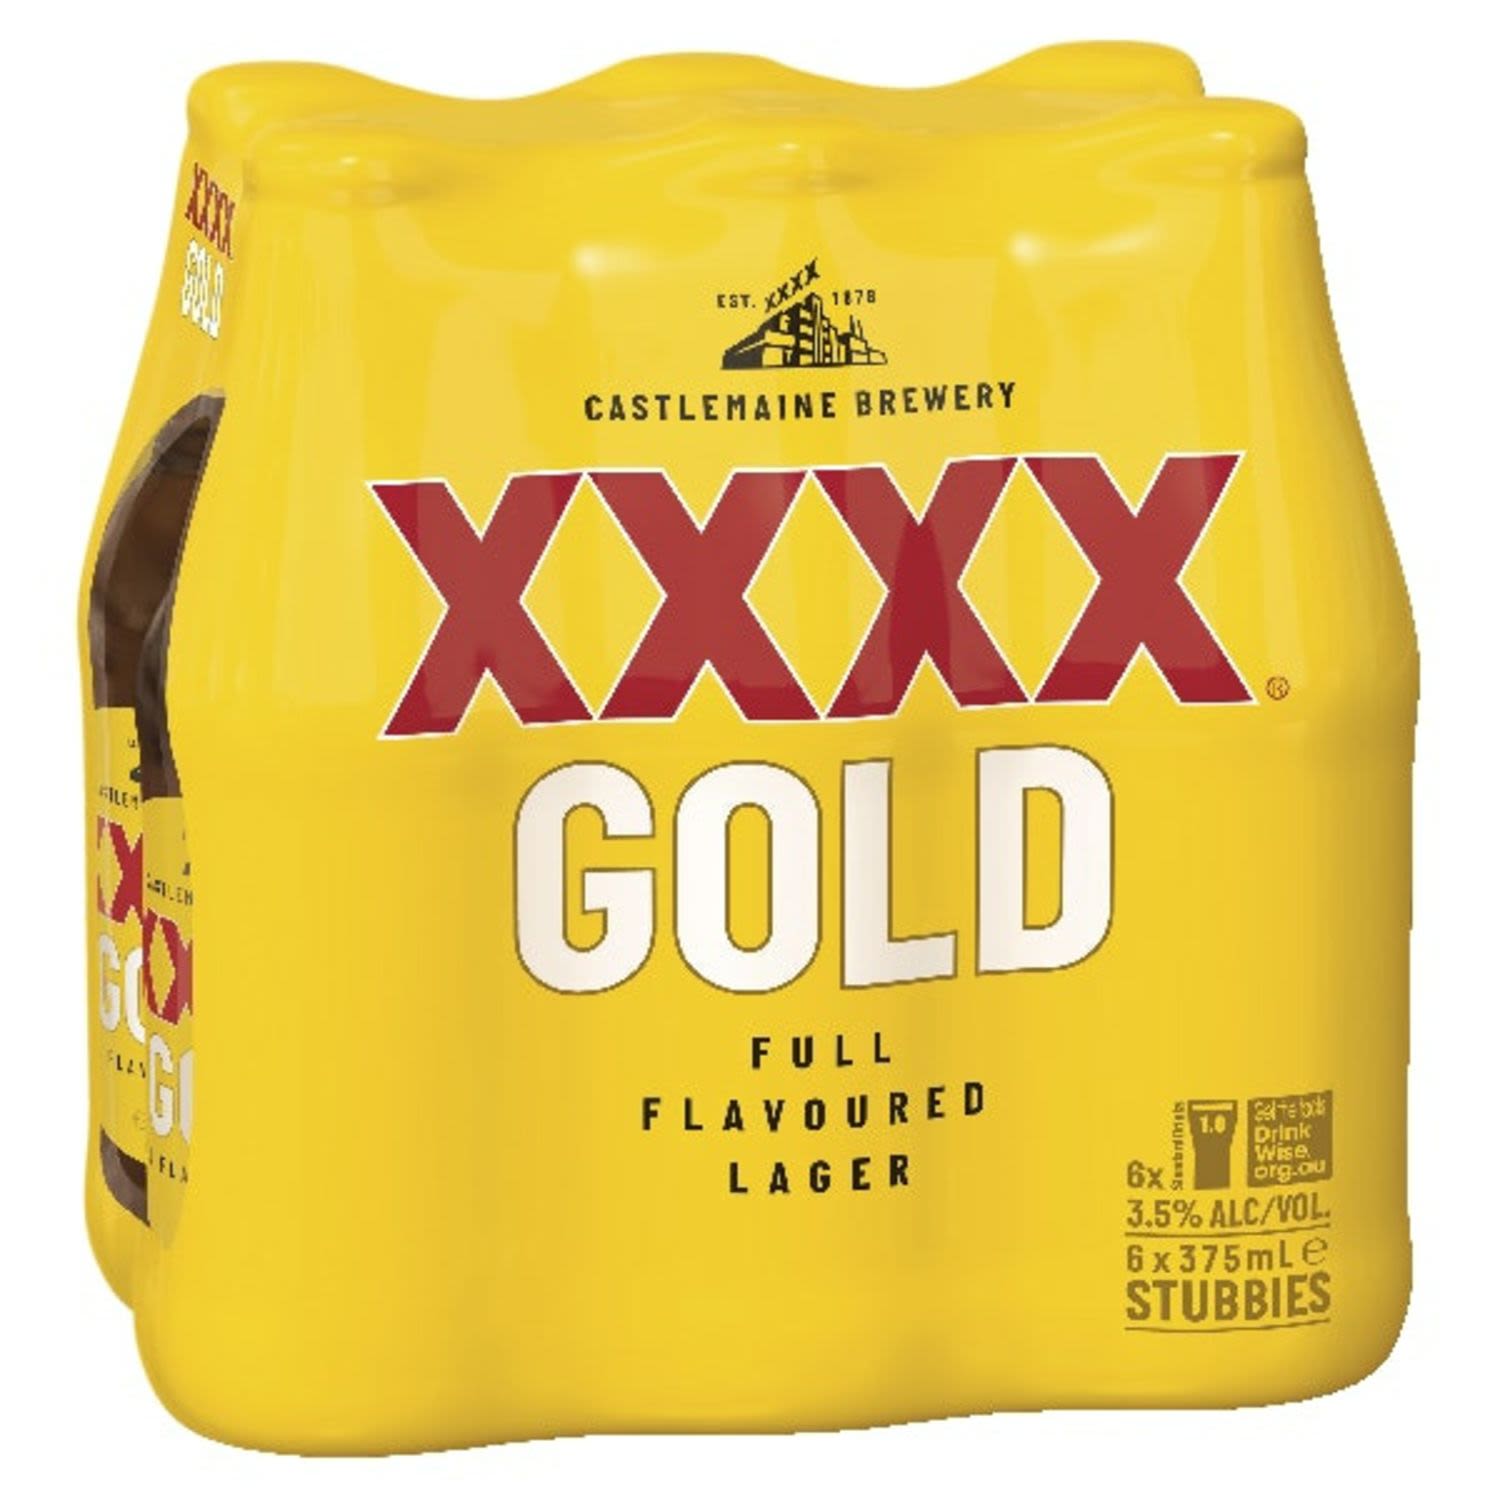 XXXX Gold Bottle 375mL 6 Pack